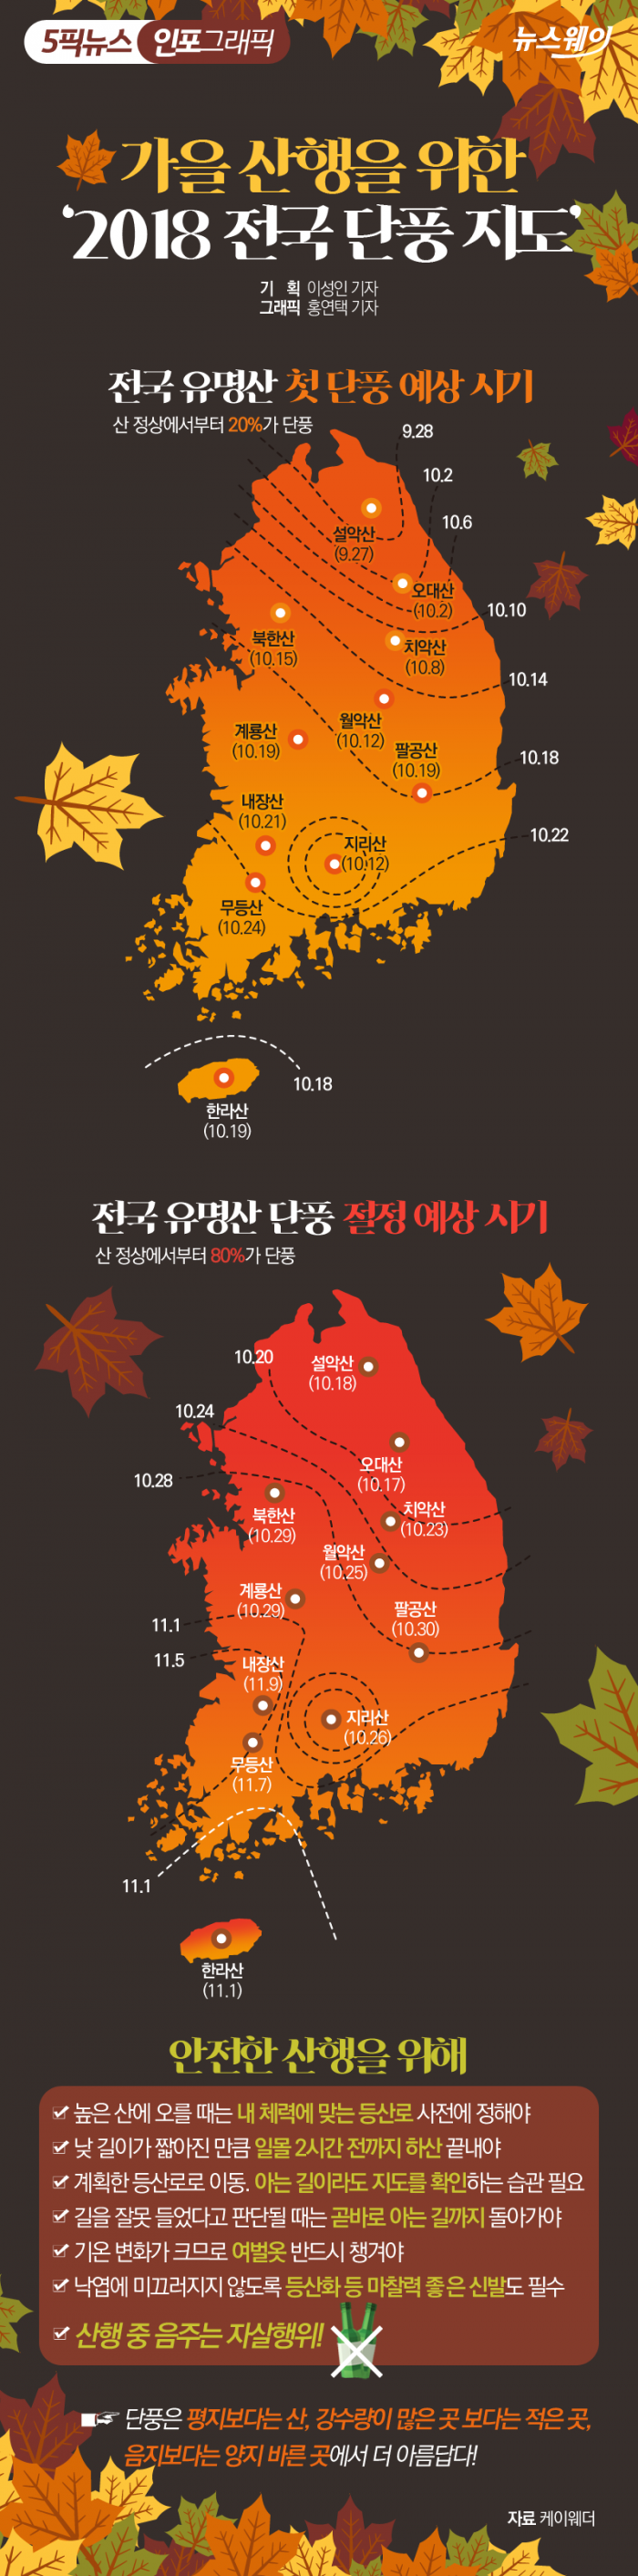 가을 산행을 위한 ‘2018 전국 단풍 지도’ 기사의 사진